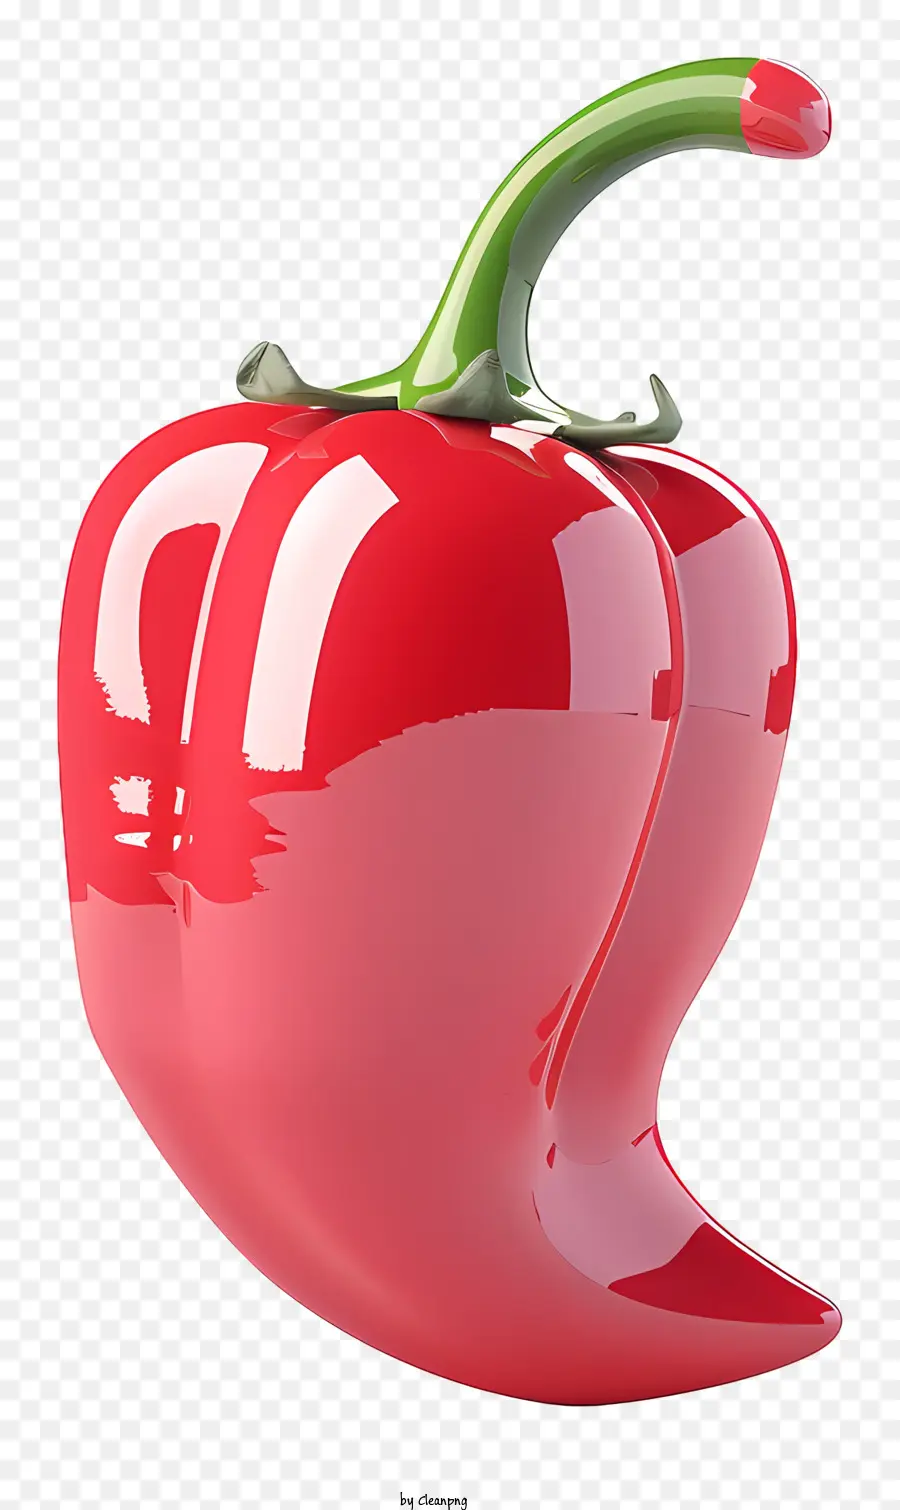 pepper red chili pepper fresh chili pepper shiny chili pepper glossy chili pepper